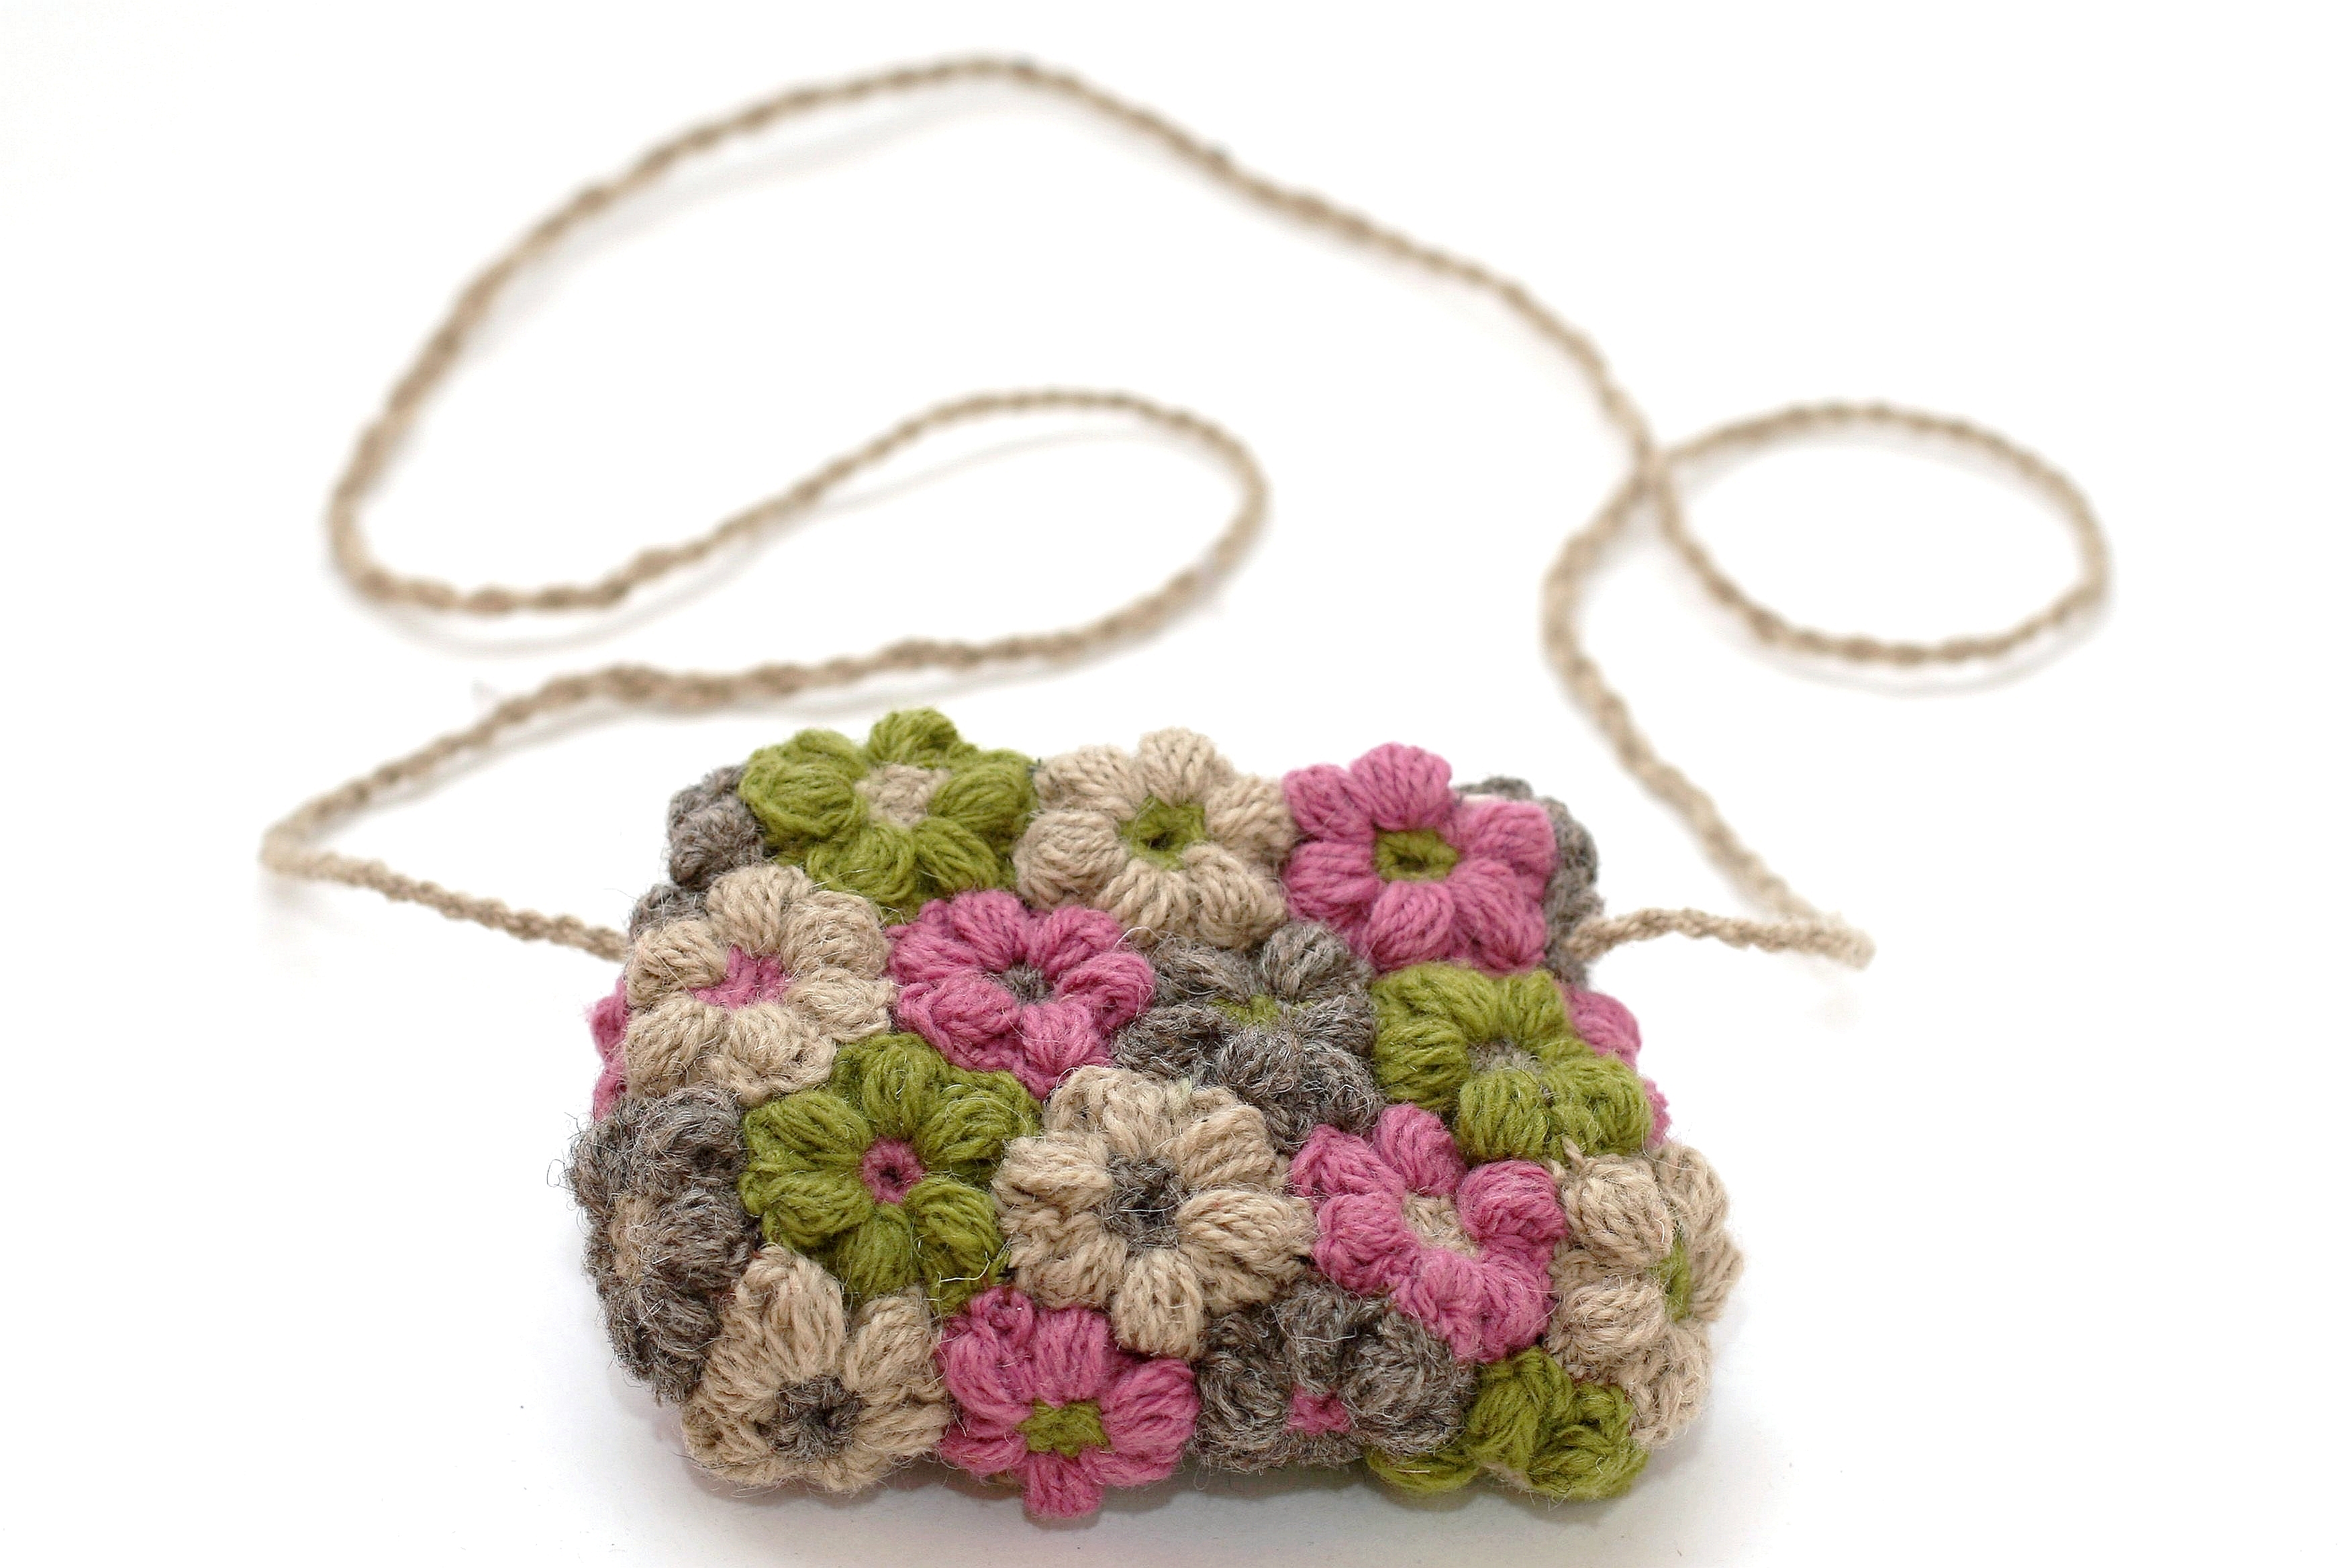 Katech Crochet Kit for Beginners with Detail Instructions, Beach Bag Crochet  Starter Kit Include Ergonomic Crochet Hooks and Crochet Yarn, Beginner  Knitting Kit for Adult DIY Crochet Bag : Amazon.in: Home &